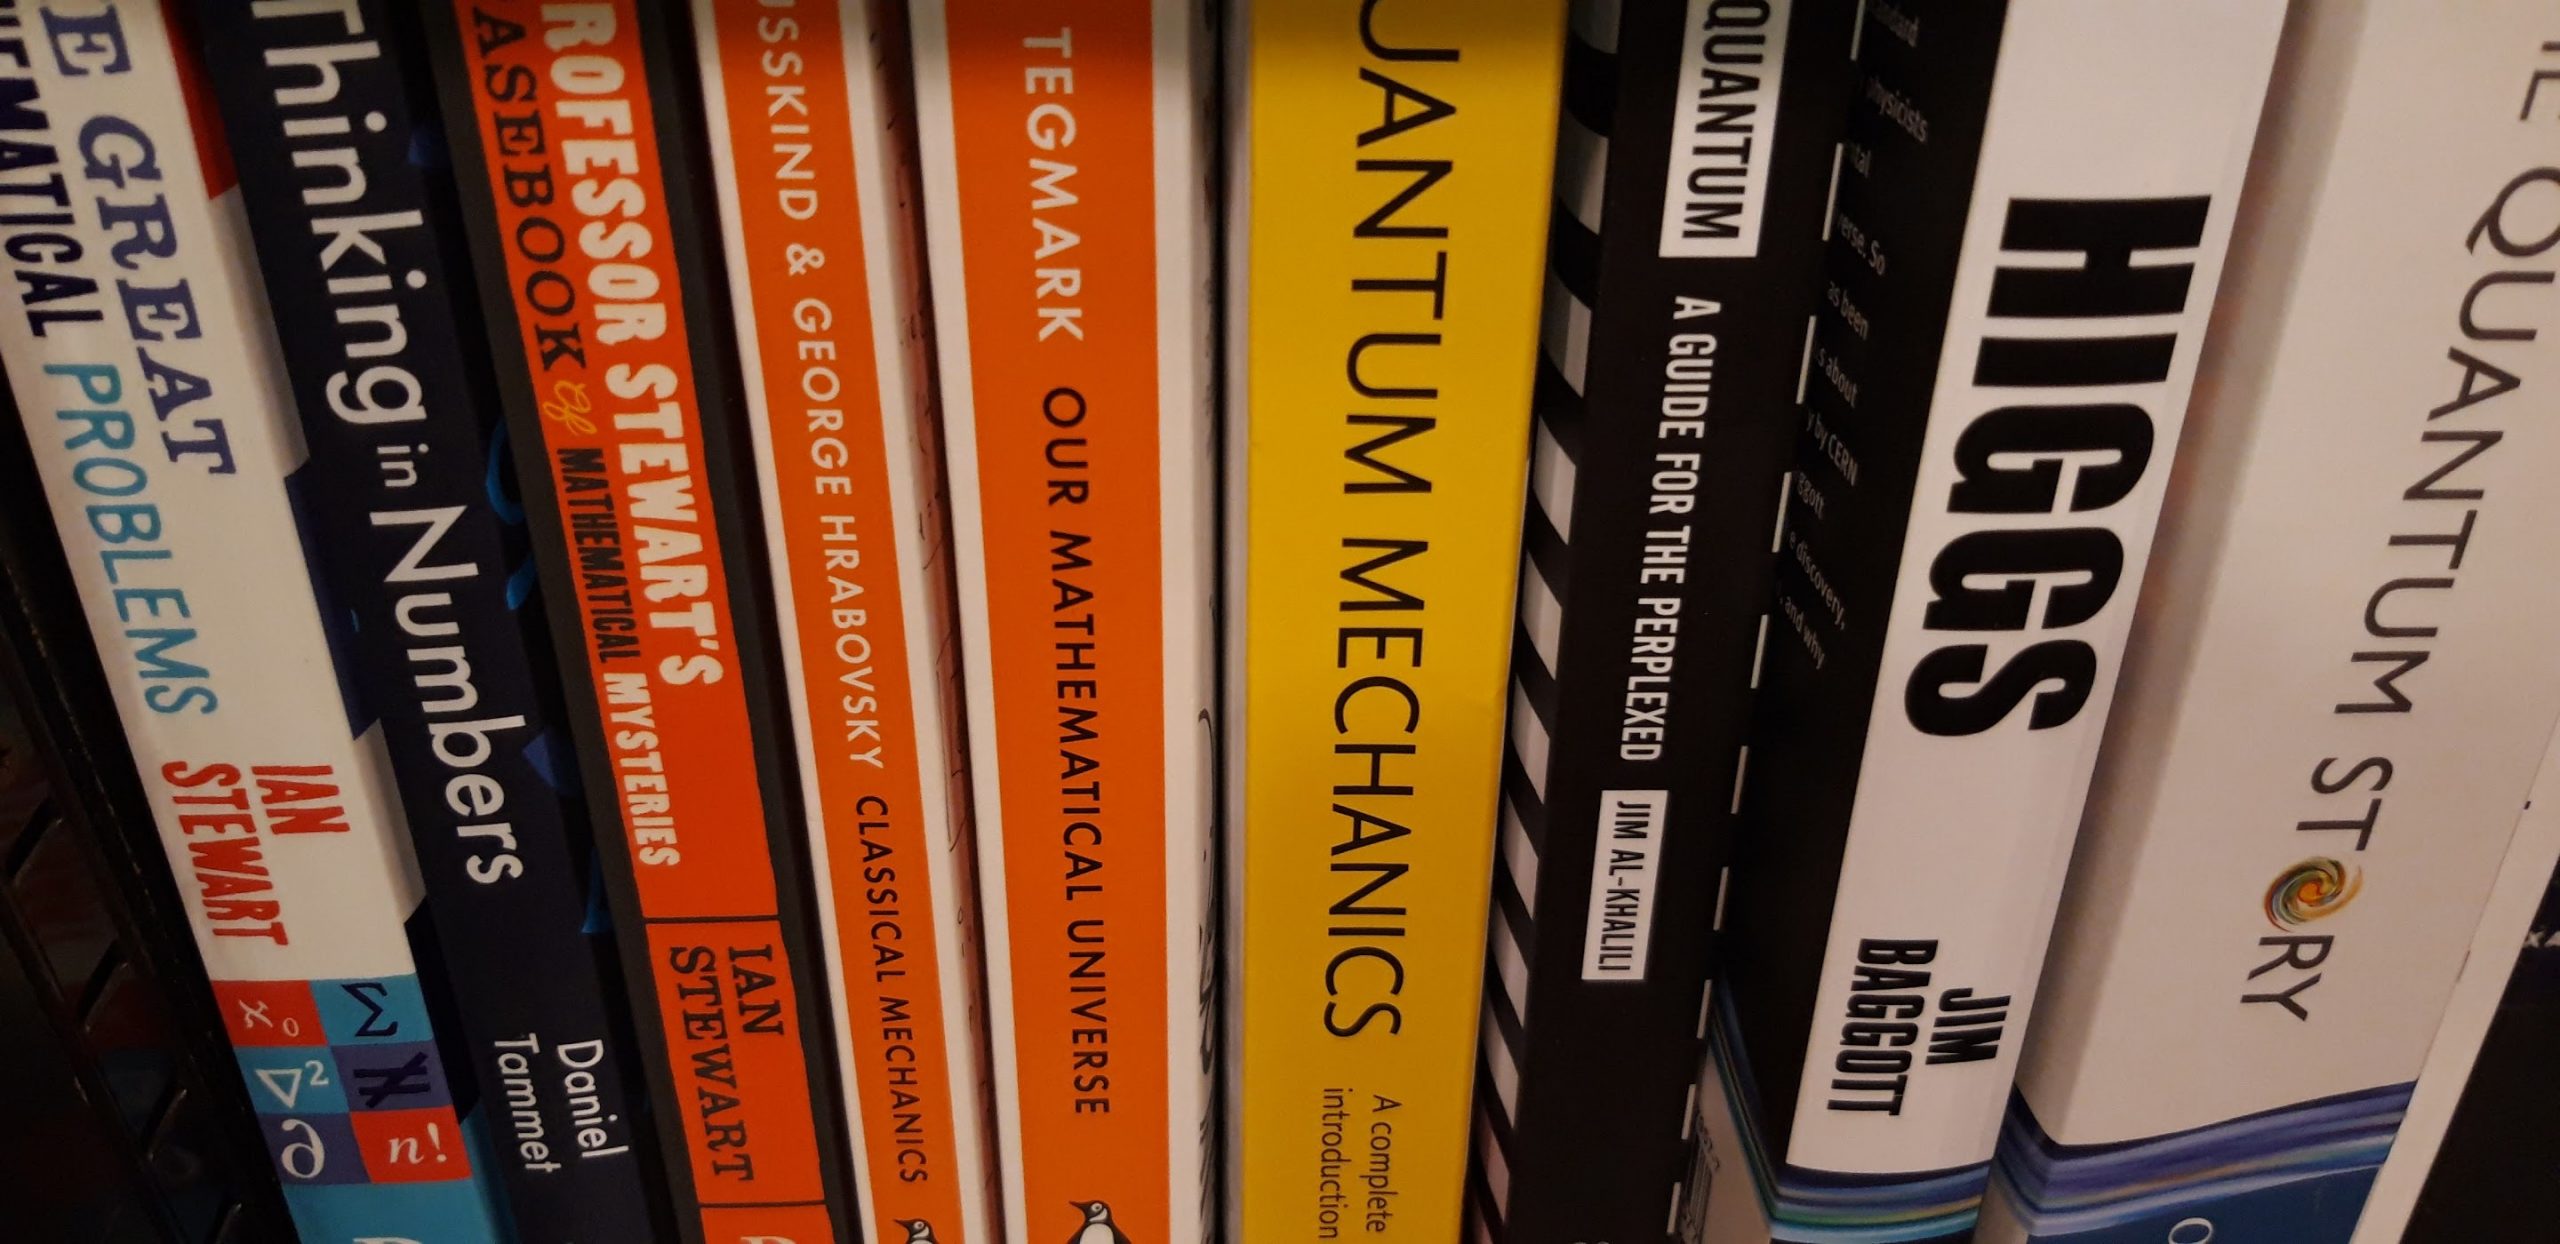 Quantum Computing Books